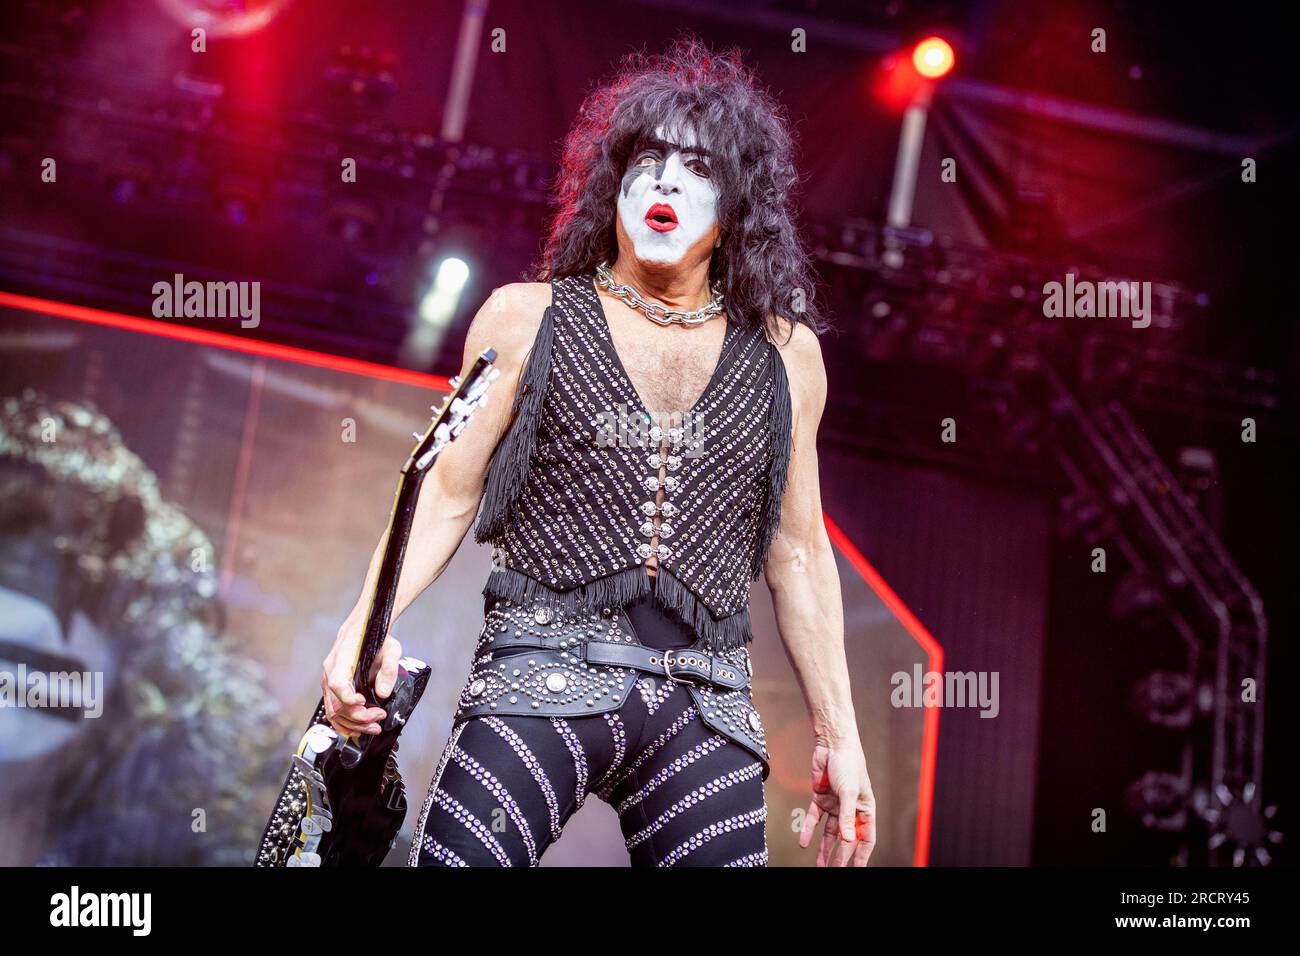 24 791 photos et images de Kiss Band - Getty Images